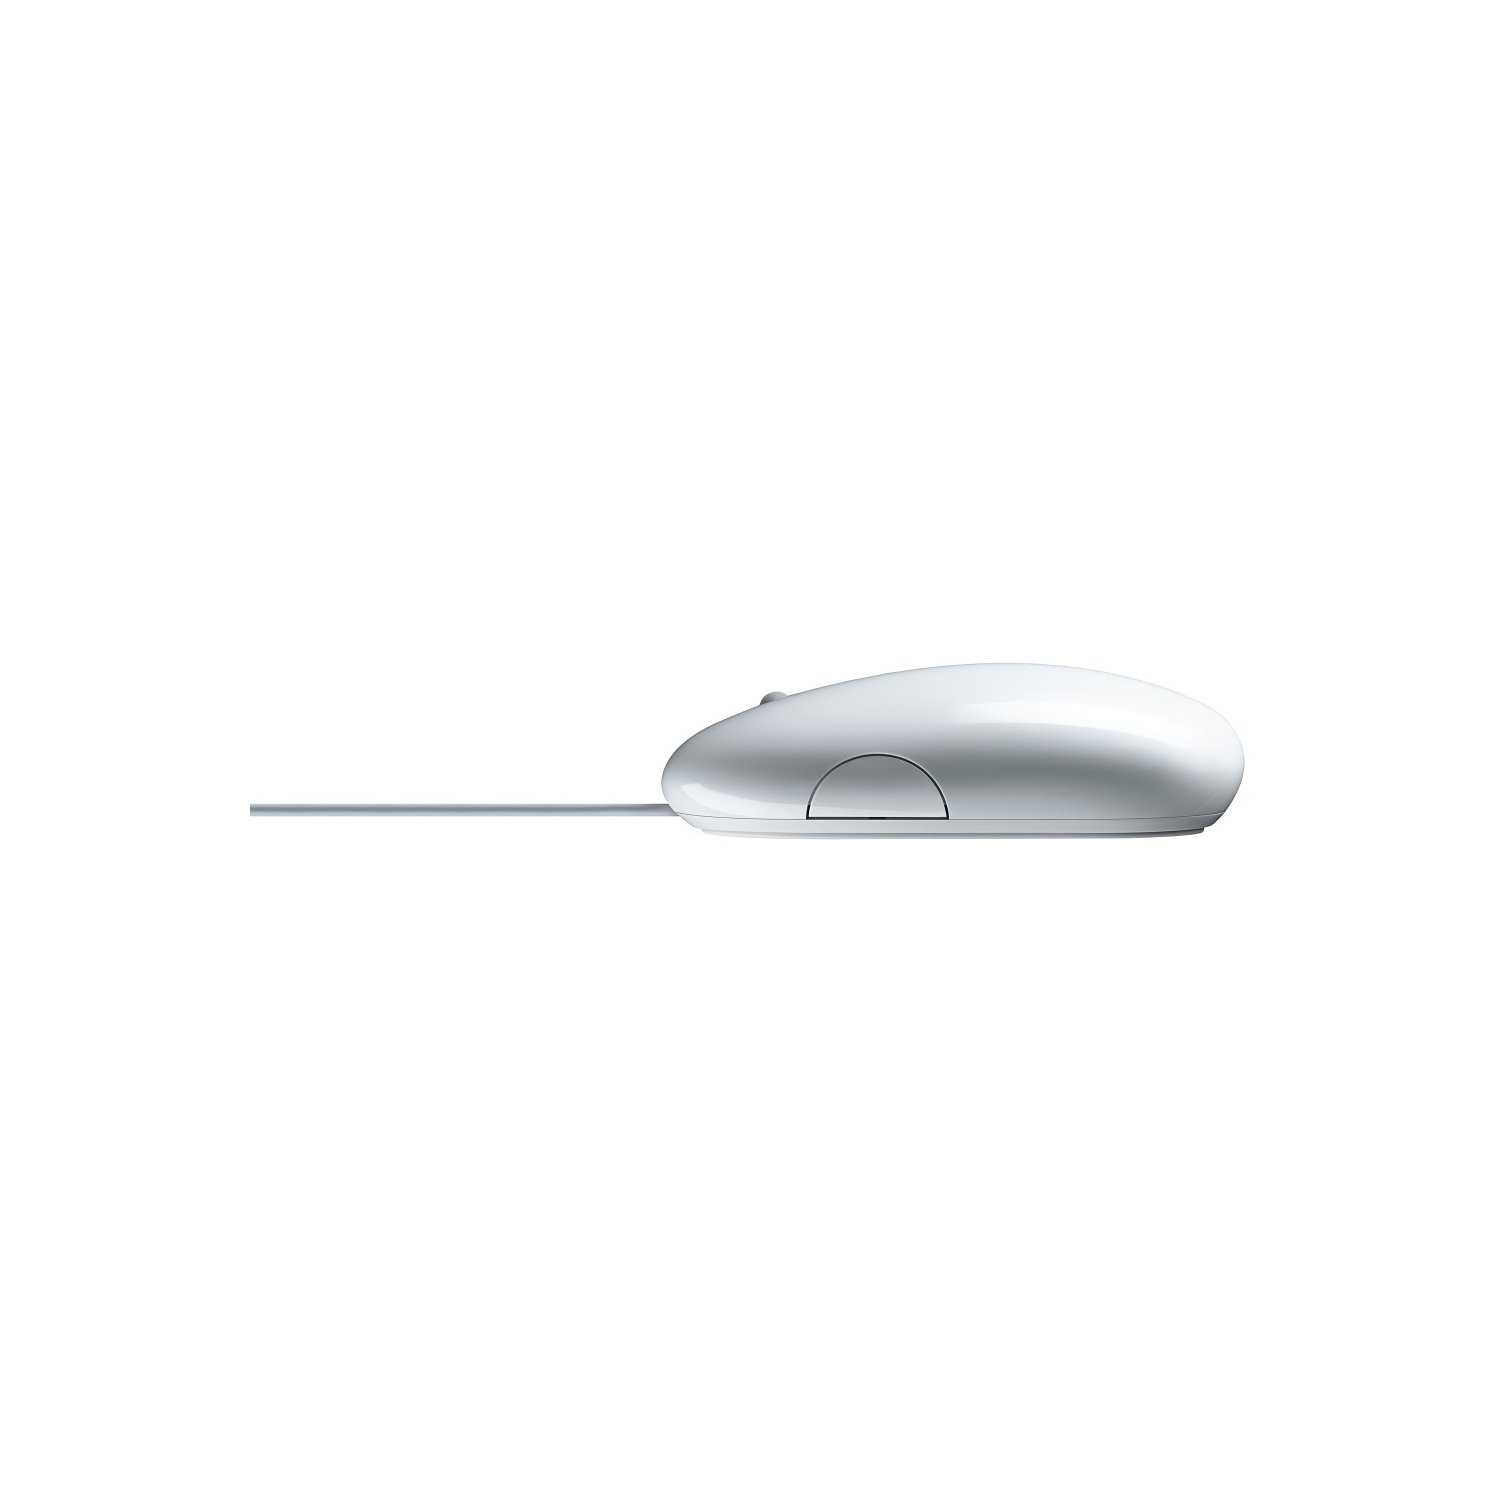 Мышь проводная apple mb112 mighty mouse white usb (белый) (mb112zm/c) купить от 1229 руб в красноярске, сравнить цены, отзывы, видео обзоры и характеристики